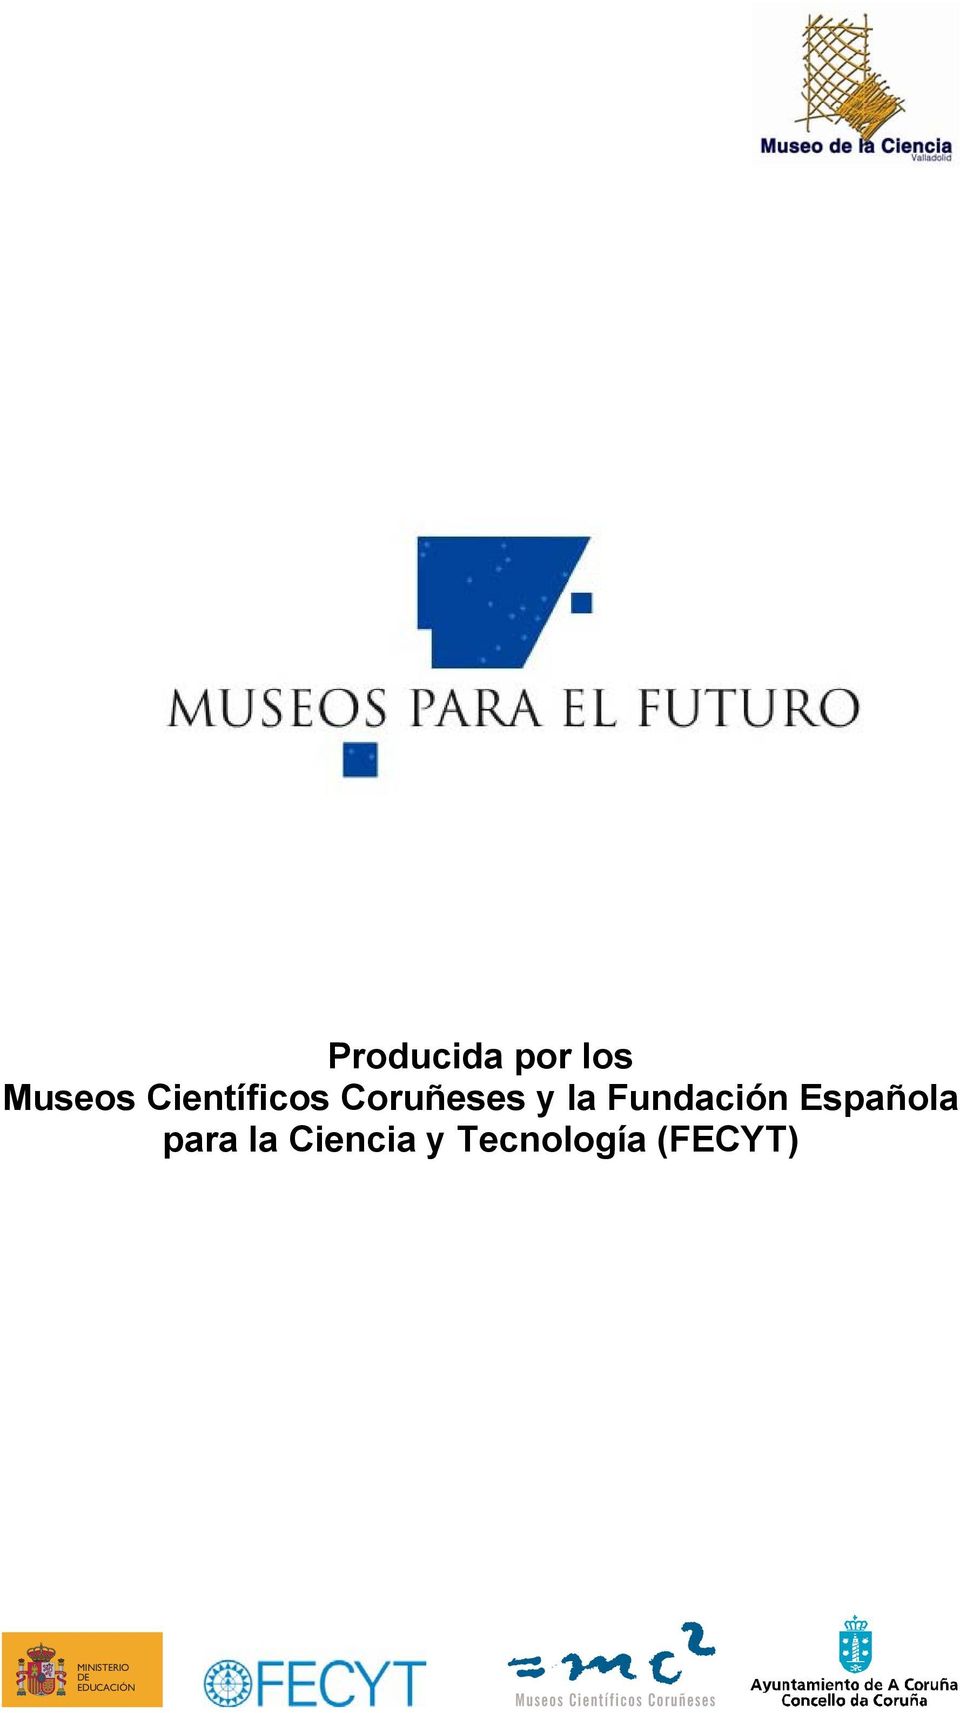 Fundación Española para la